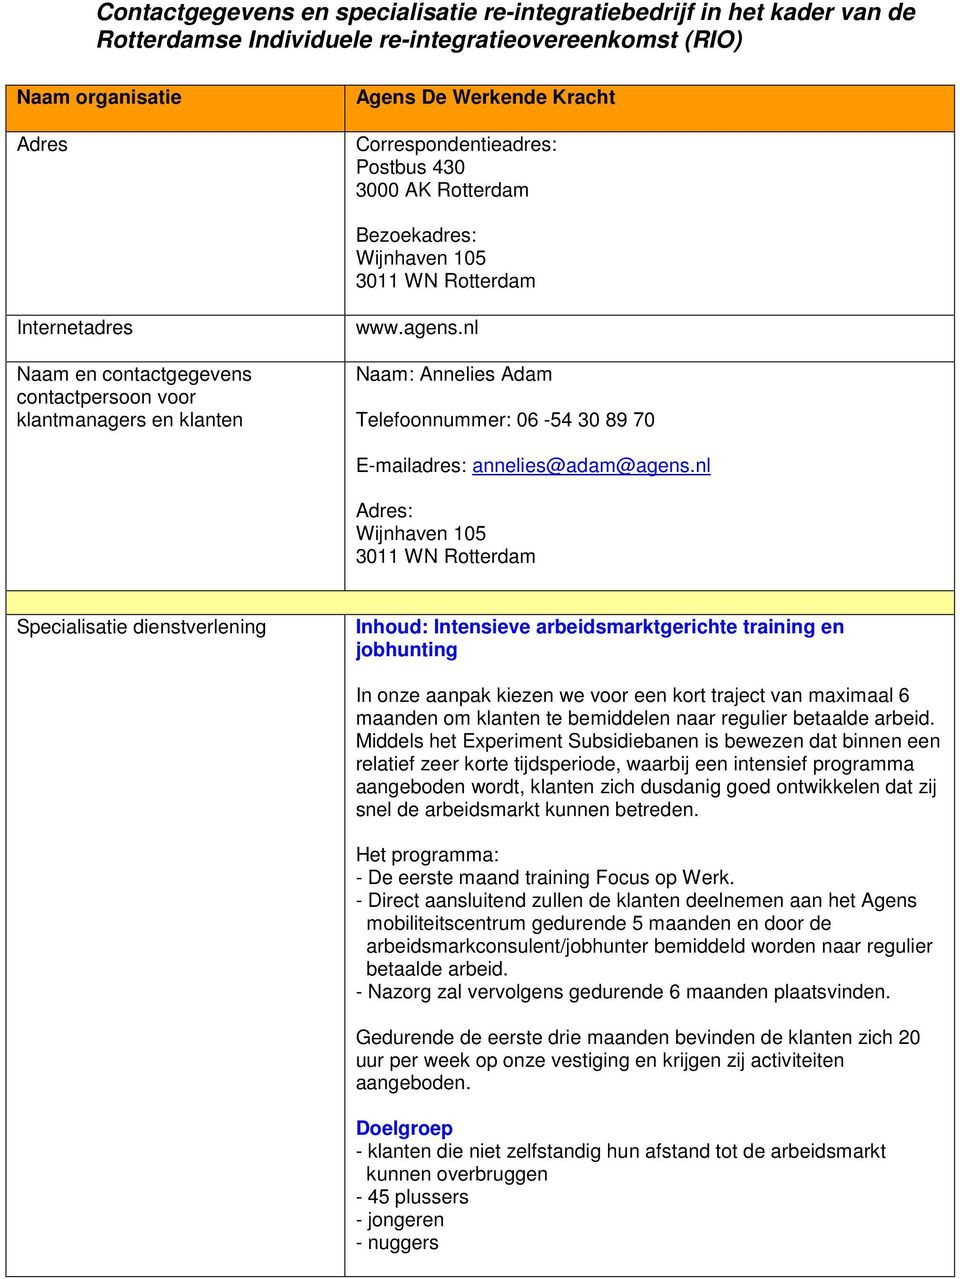 nl : Wijnhaven 105 3011 WN Rotterdam Inhoud: Intensieve arbeidsmarktgerichte training en jobhunting In onze aanpak kiezen we voor een kort traject van maximaal 6 maanden om klanten te bemiddelen naar